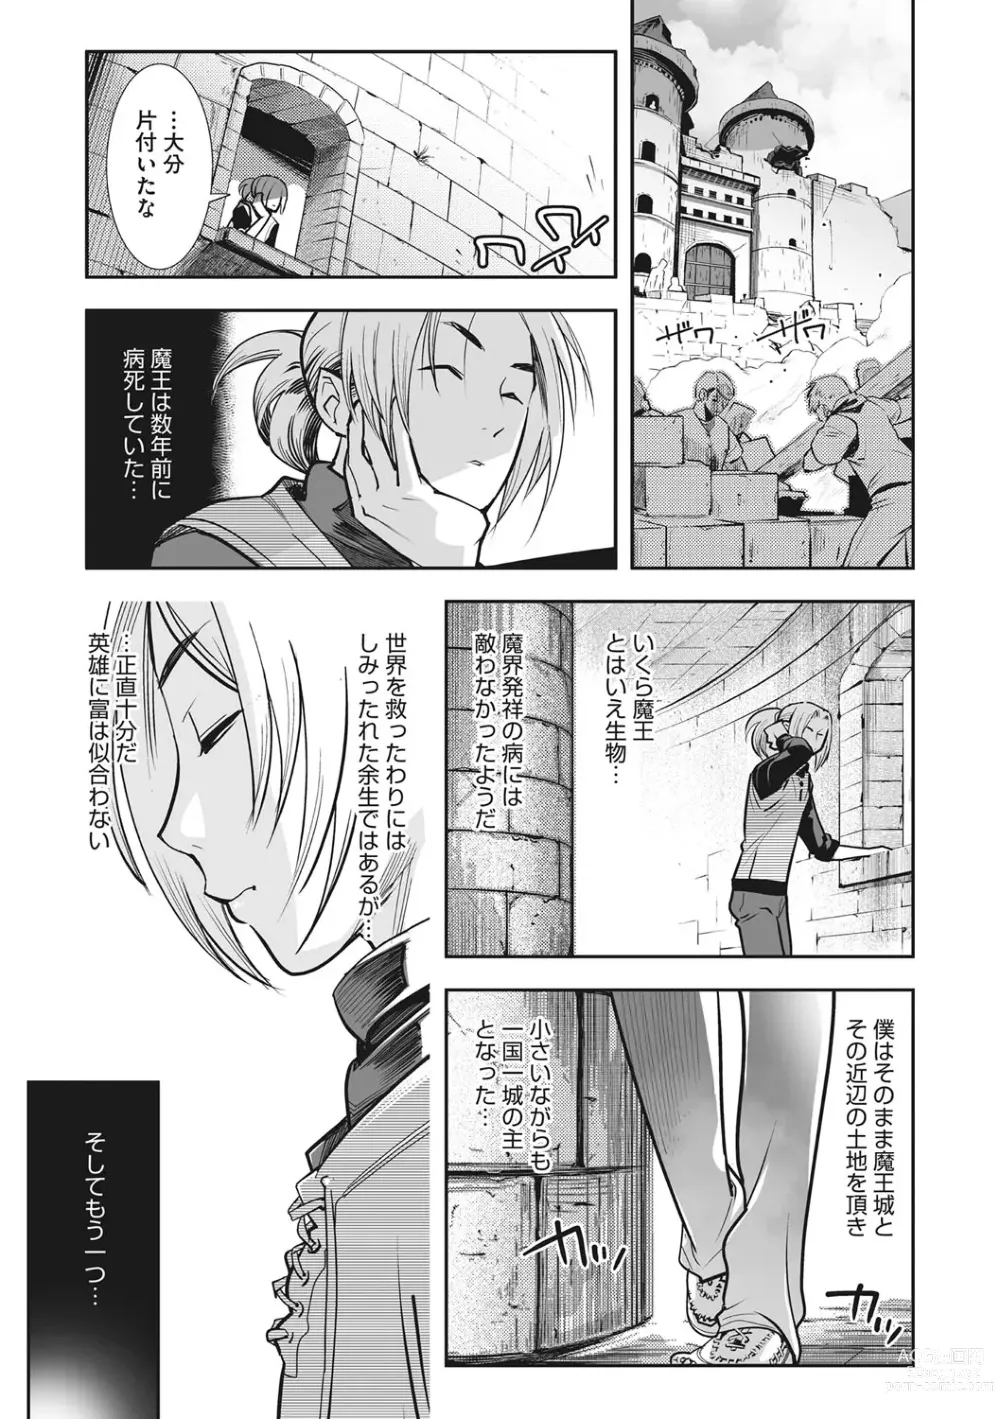 Page 6 of manga Kemono to Koishite Nani ga Warui!